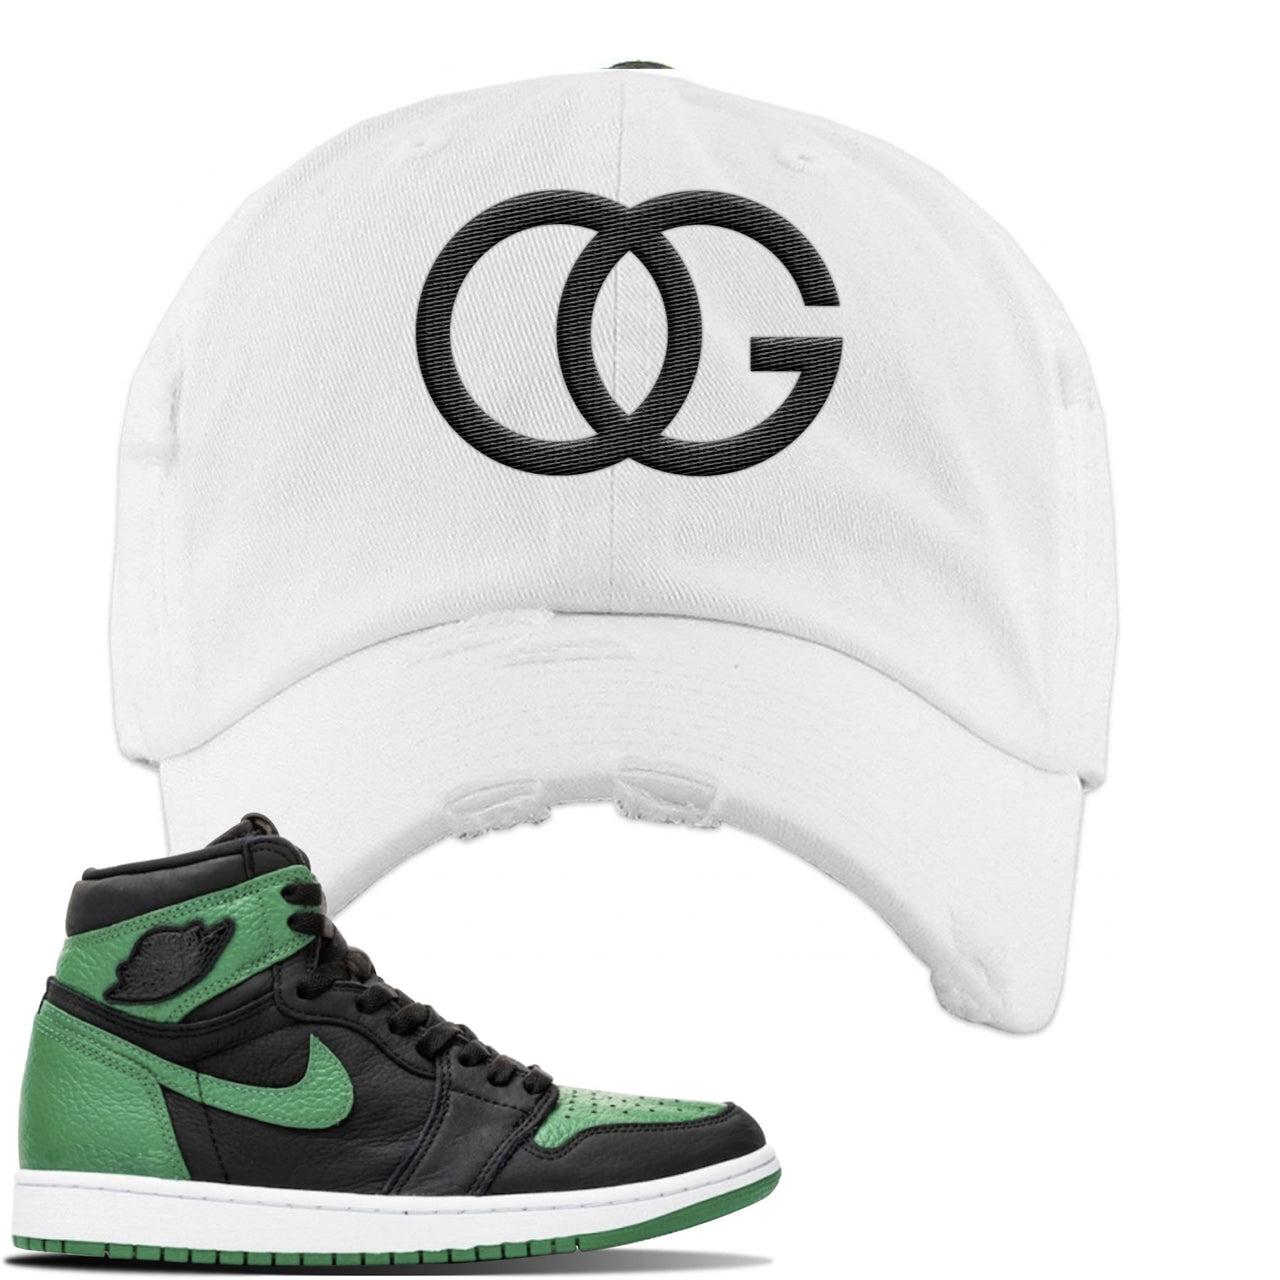 Jordan 1 Retro High OG Pine Green Gym Sneaker White Distressed Dad Hat | Hat to match Air Jordan 1 Retro High OG Pine Green Gym Shoes | OG